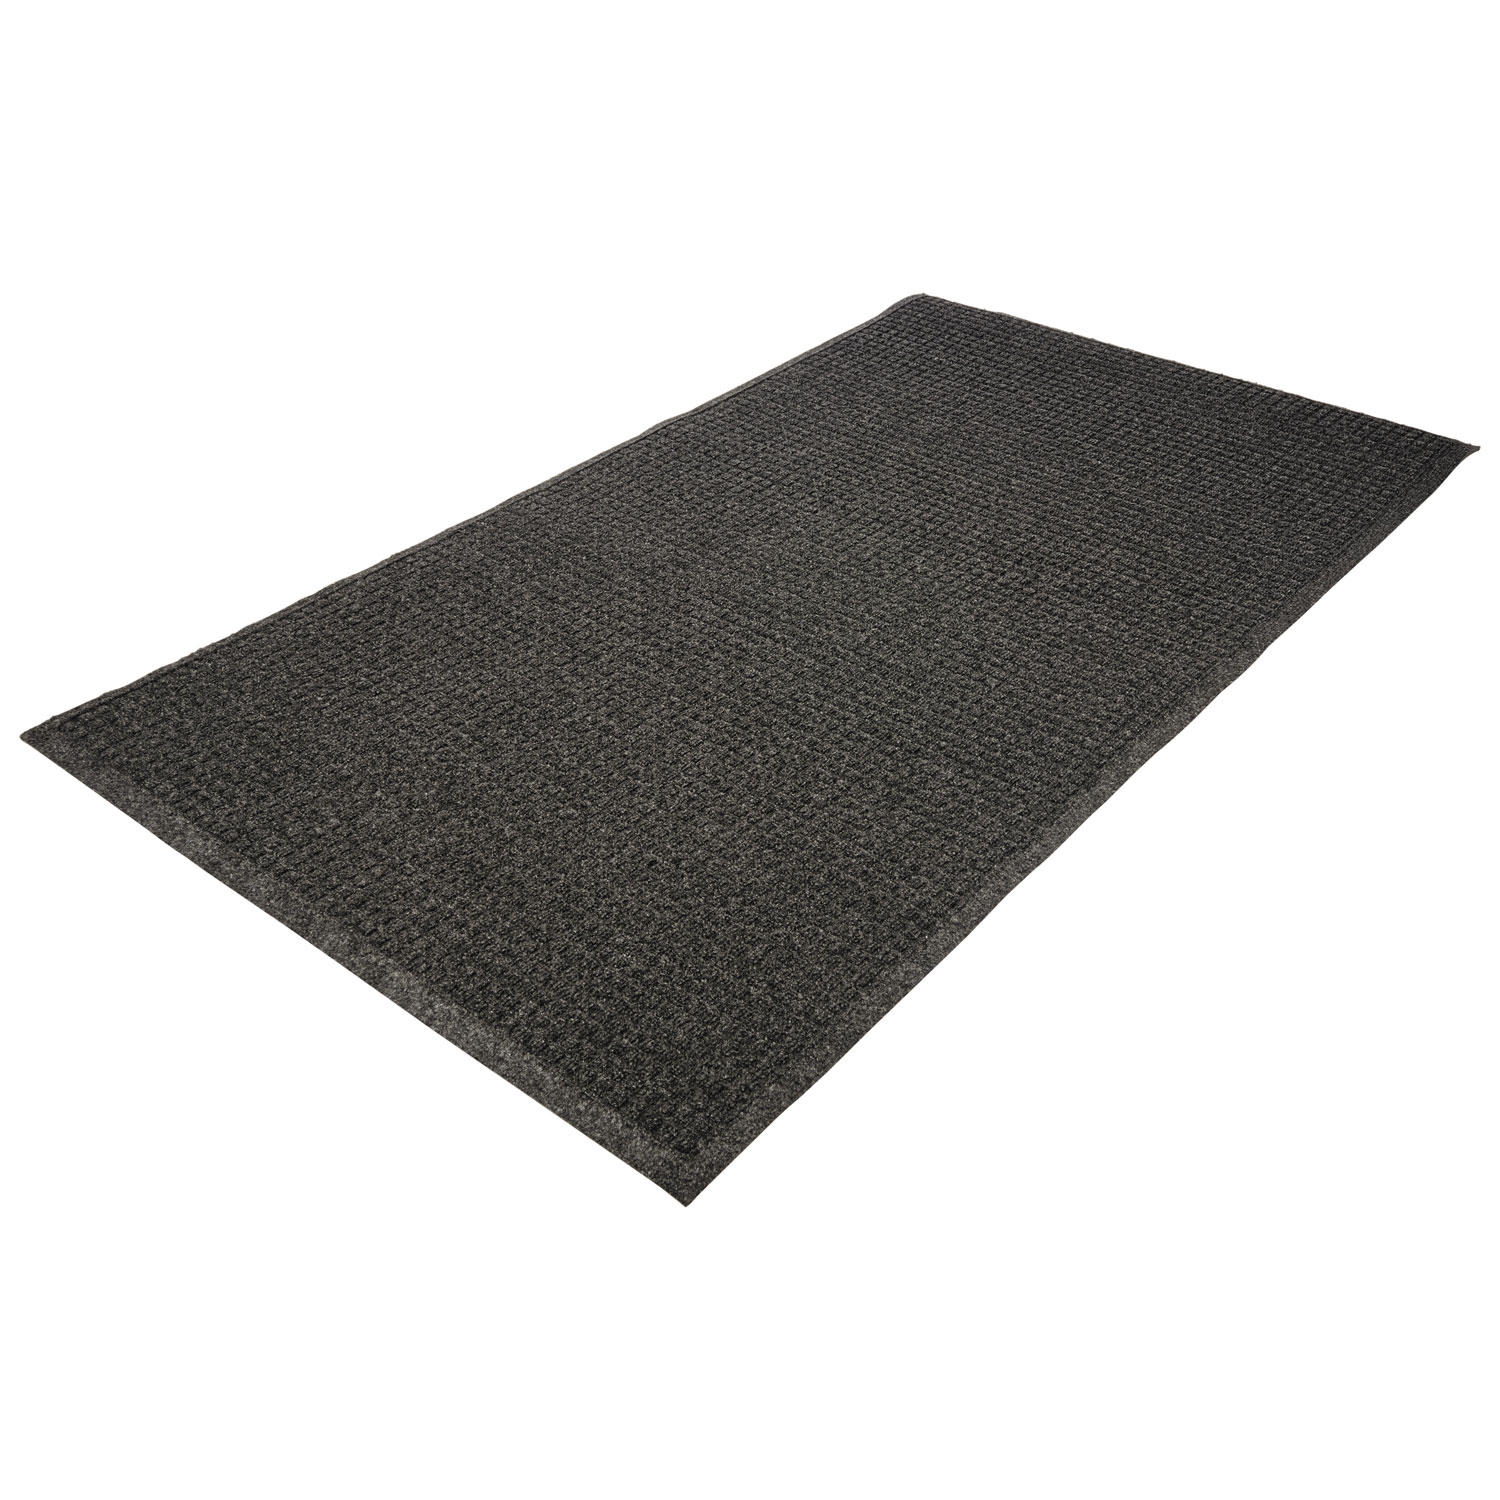 Genuine Joe EcoGuard Indoor Wiper Floor Mats - Indoor - 36" Length x 24" Width - Plastic, Rubber - Charcoal Gray